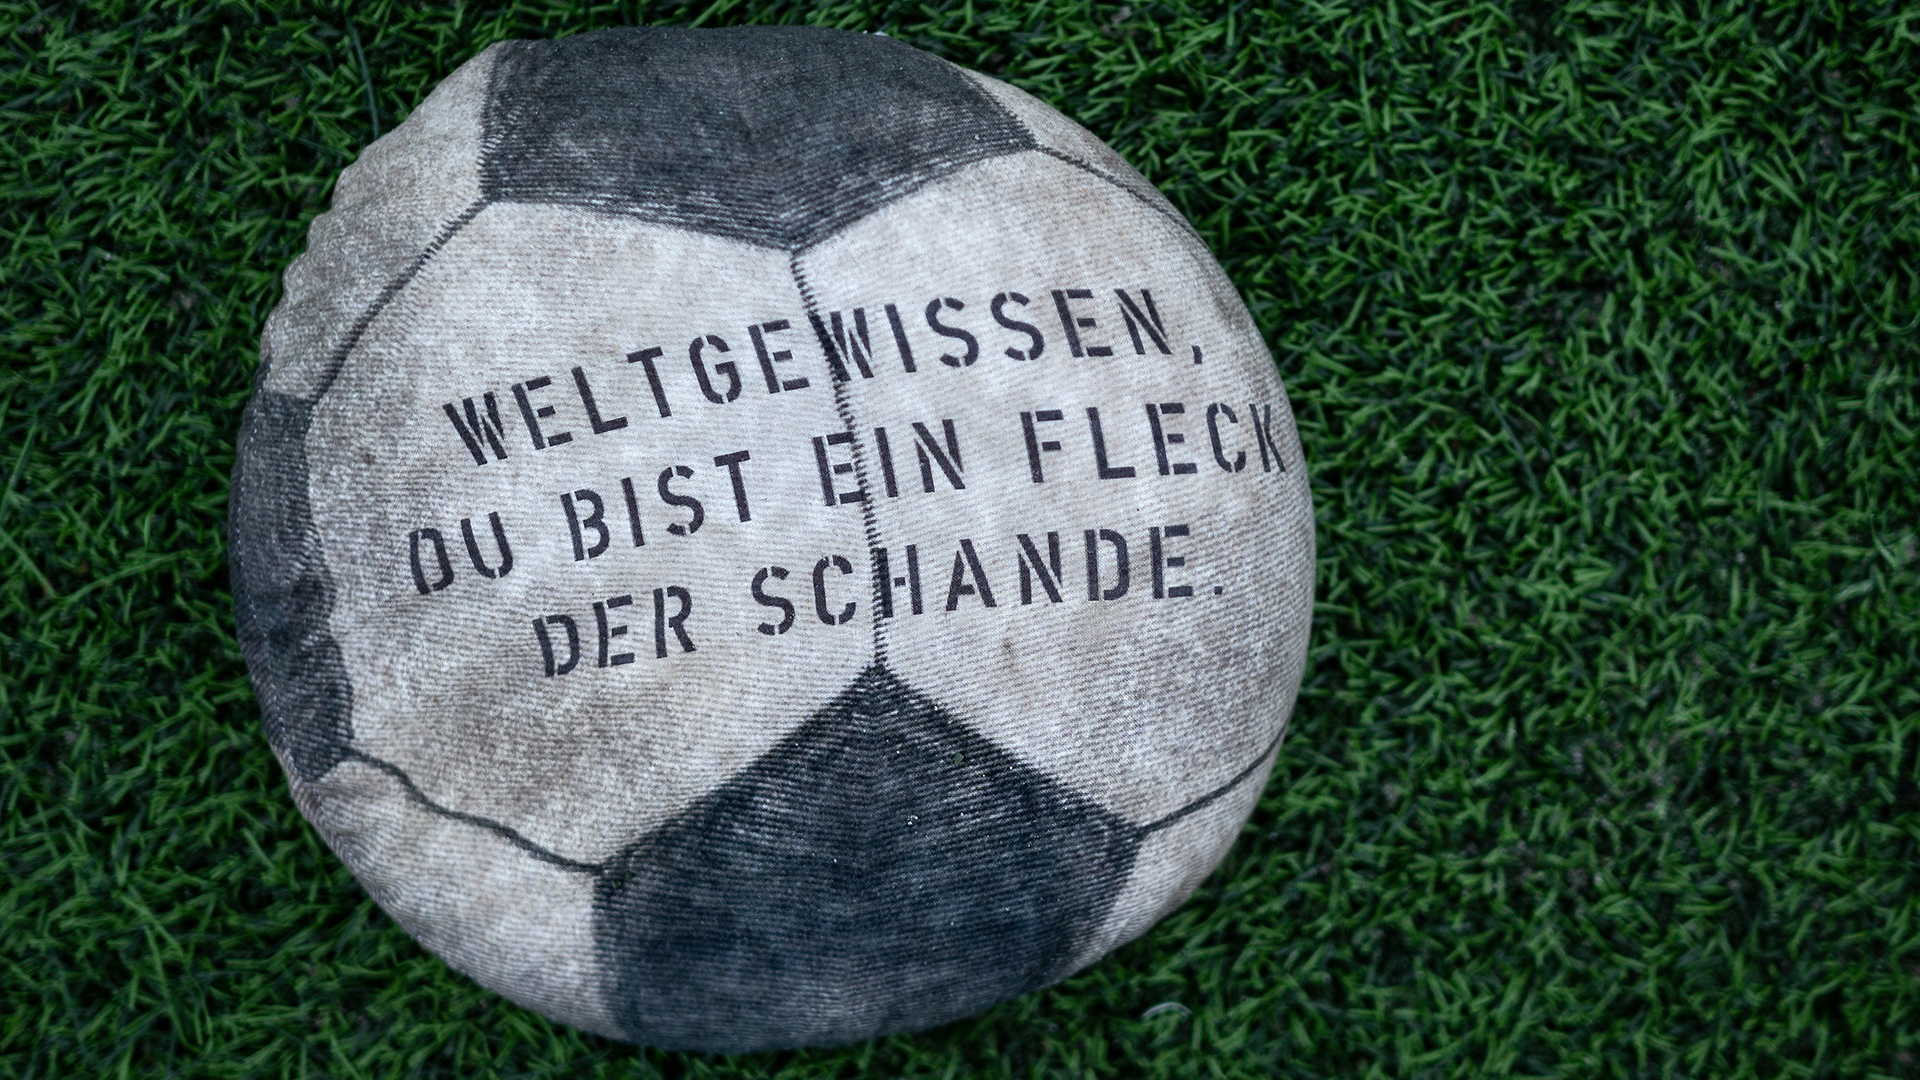 Ein mit Sand gefüllter Stoff-Fußball, auf dem "Weltgewissen, du bist ein Fleck der Schande" steht, liegt auf dem Rasen eines Fußballstadions am Schloss Strünkede in Herne (Nordrhein-Westfalen).  | dpa